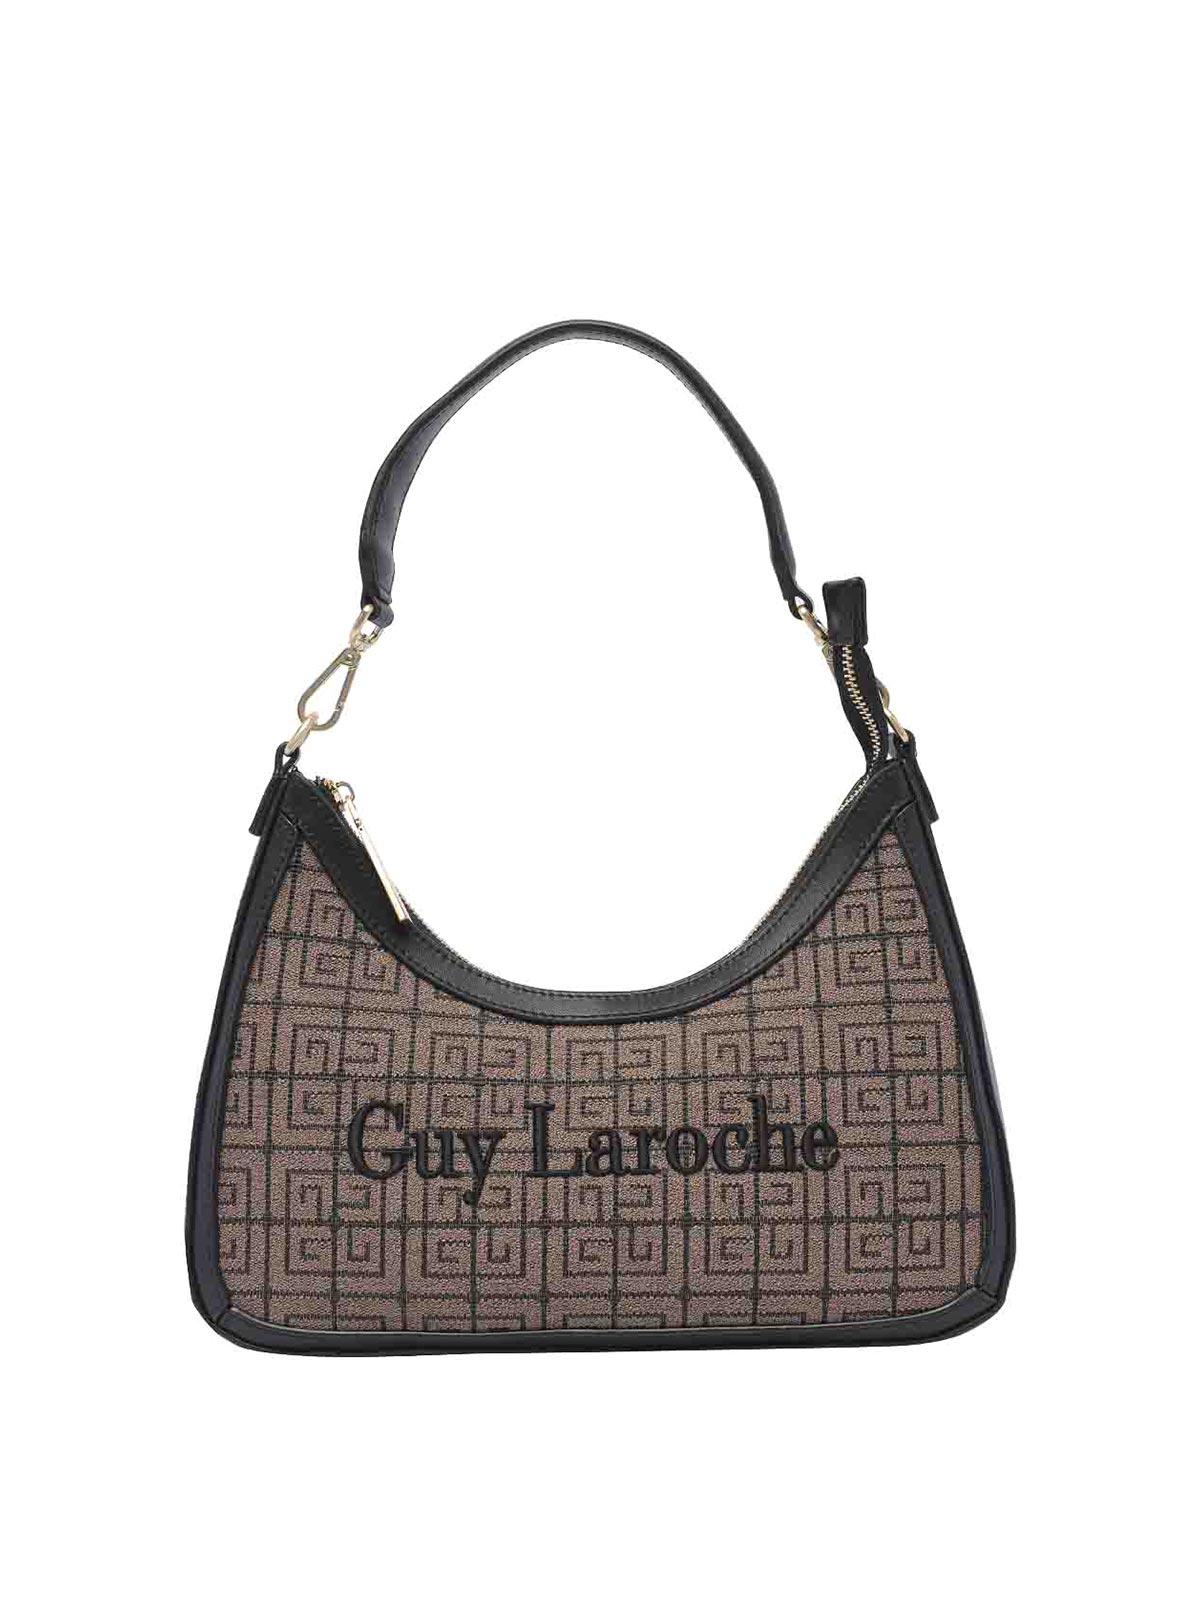 Women's Leather Bag Guy Laroche